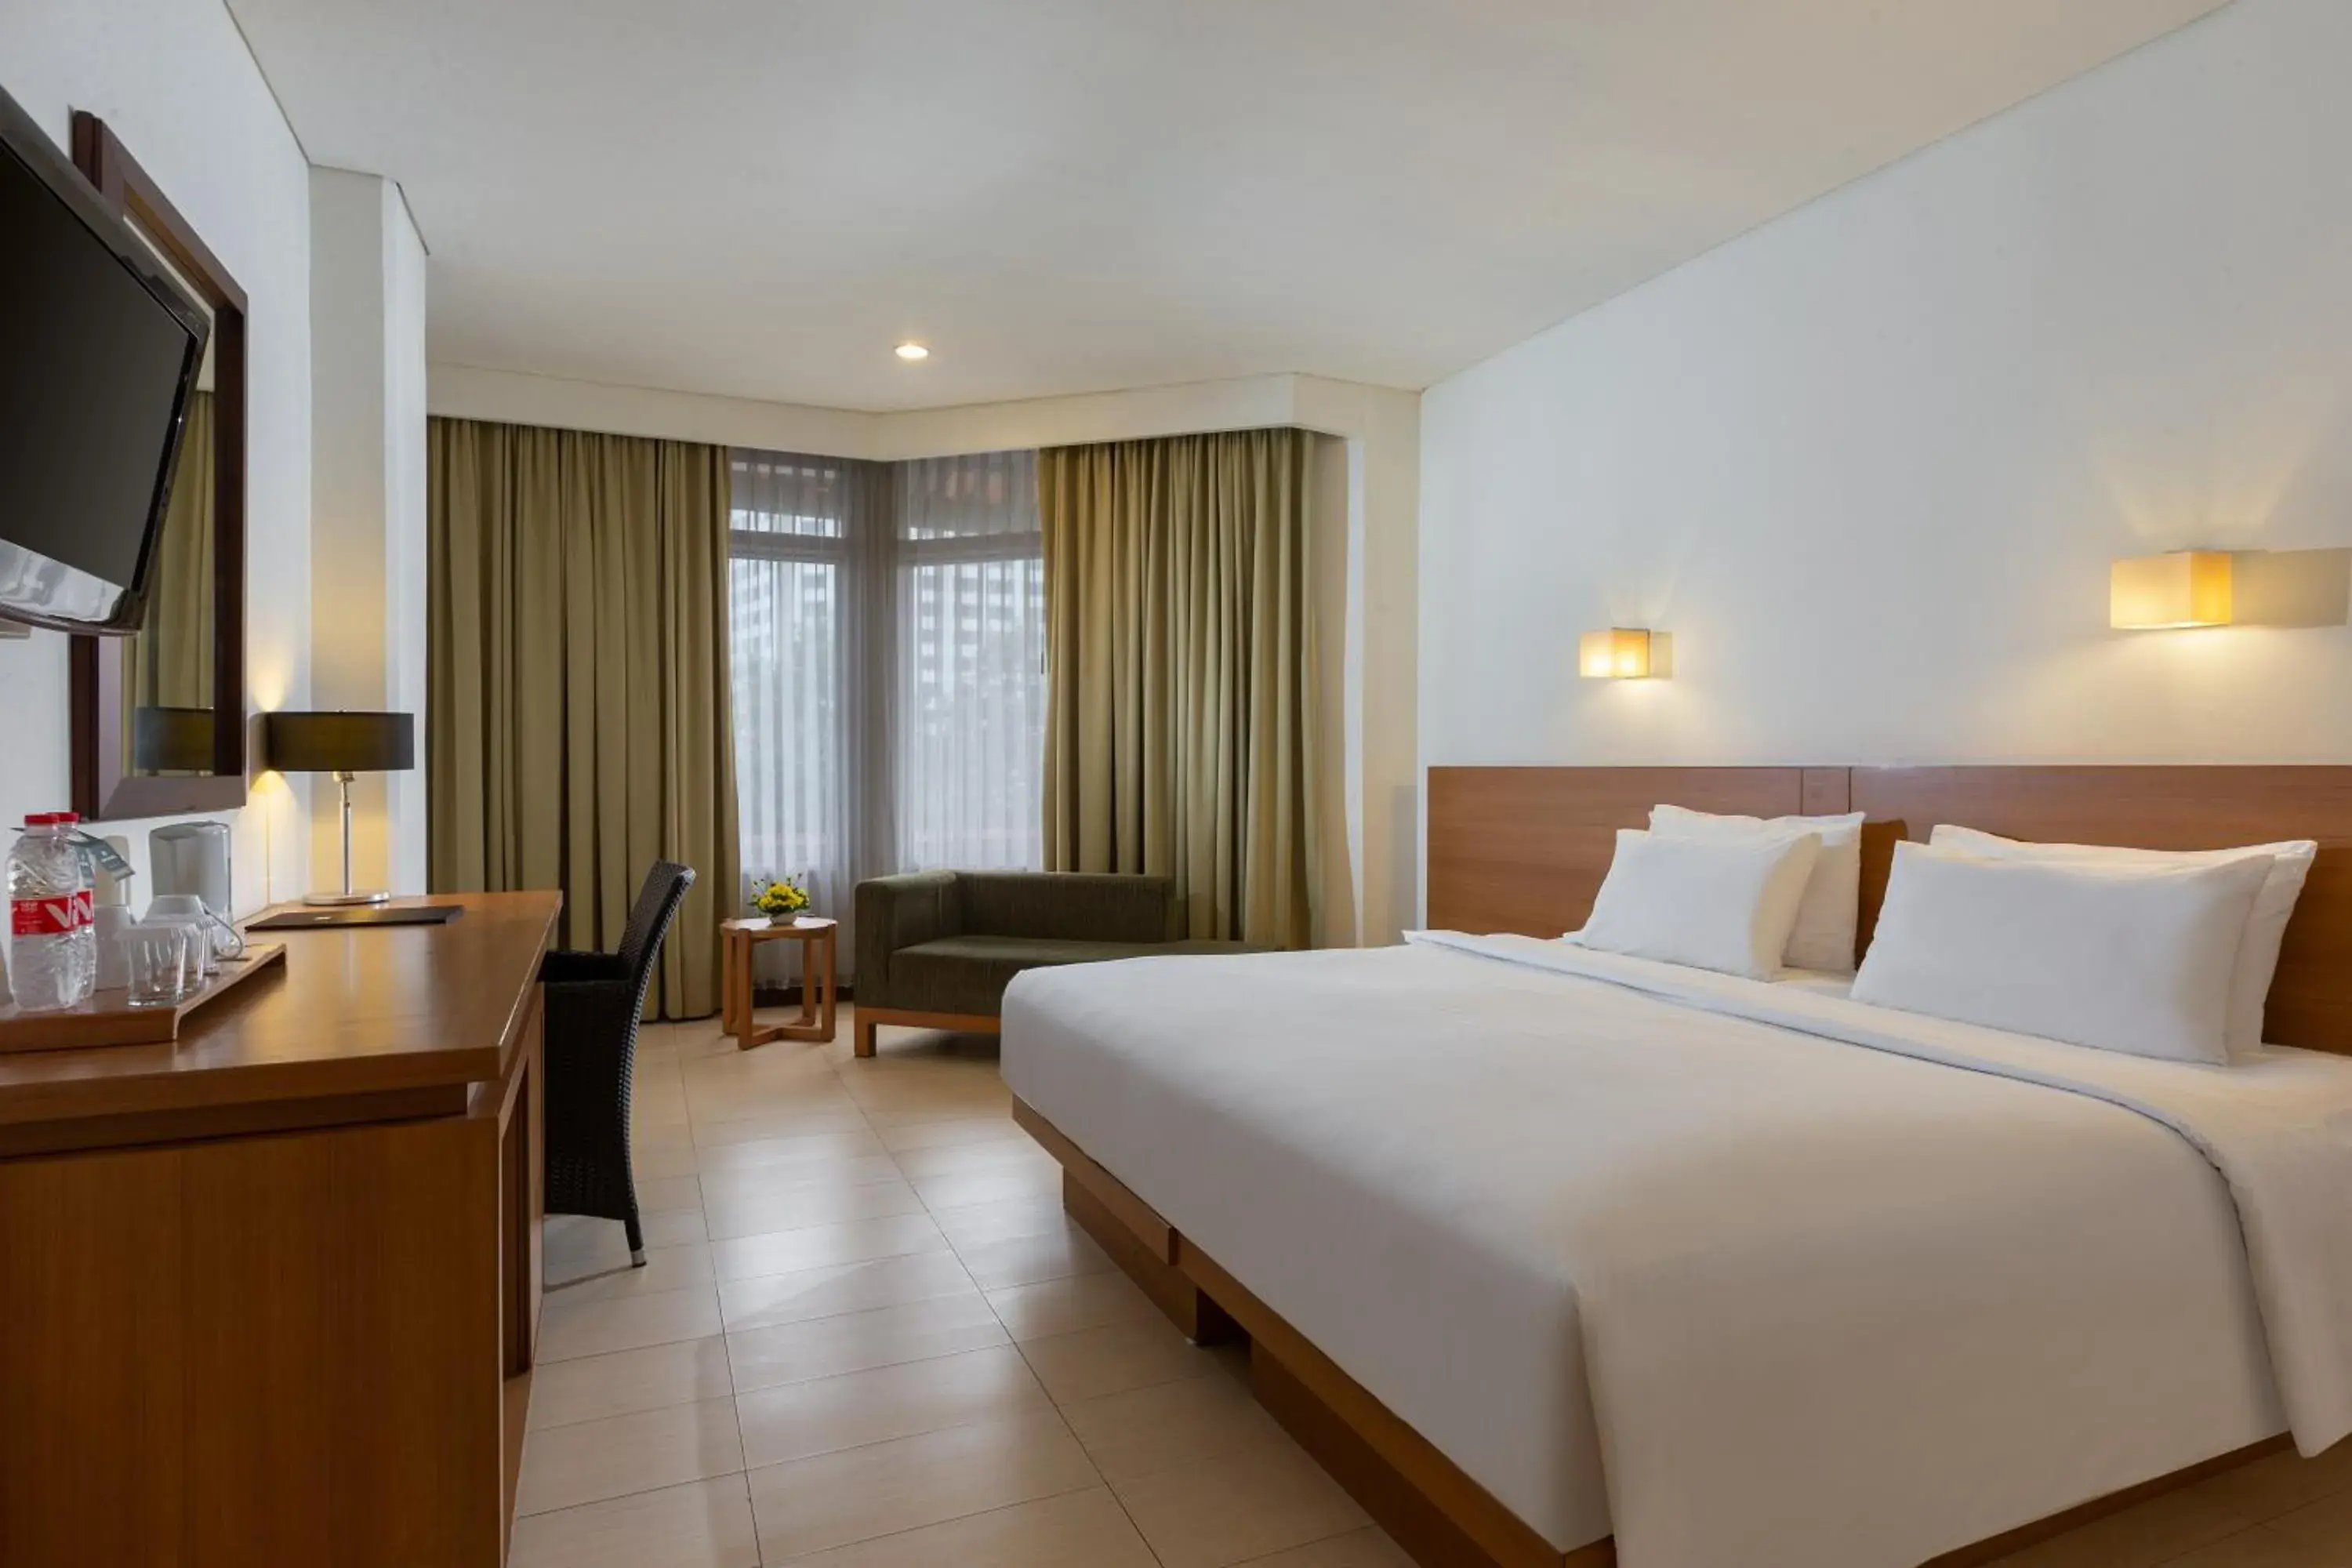 Bedroom in Hotel Santika Bandung